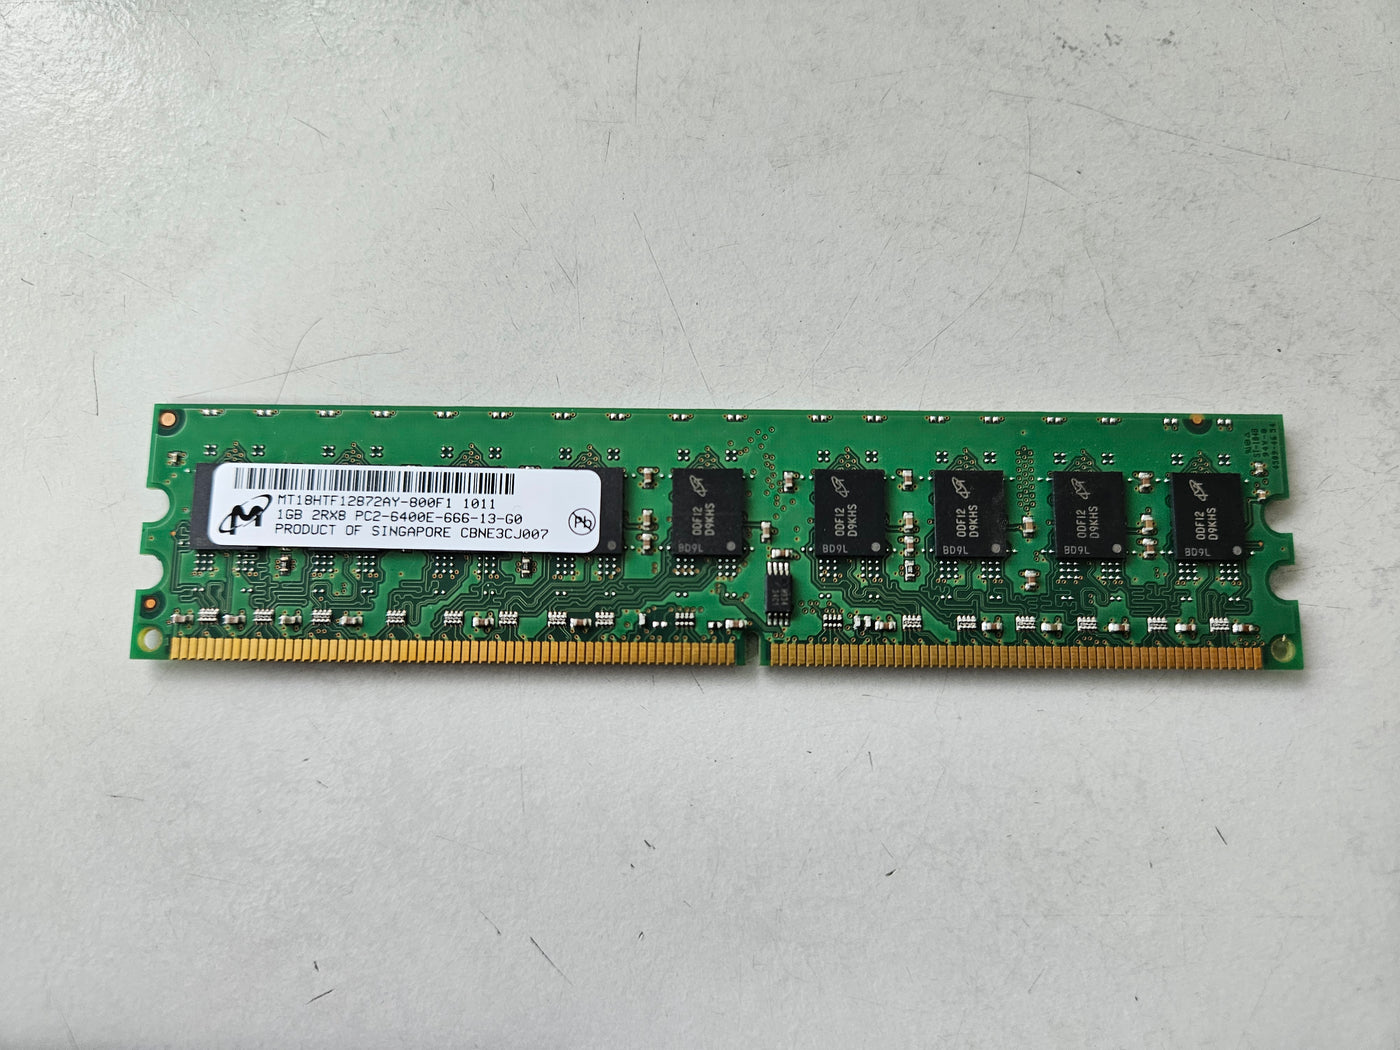 Micron HP 1GB PC2-6400 DDR2-800MHz CL6 240-Pin DIMM ( MT18HTF12872AY-800F1 445166-051 ) REF